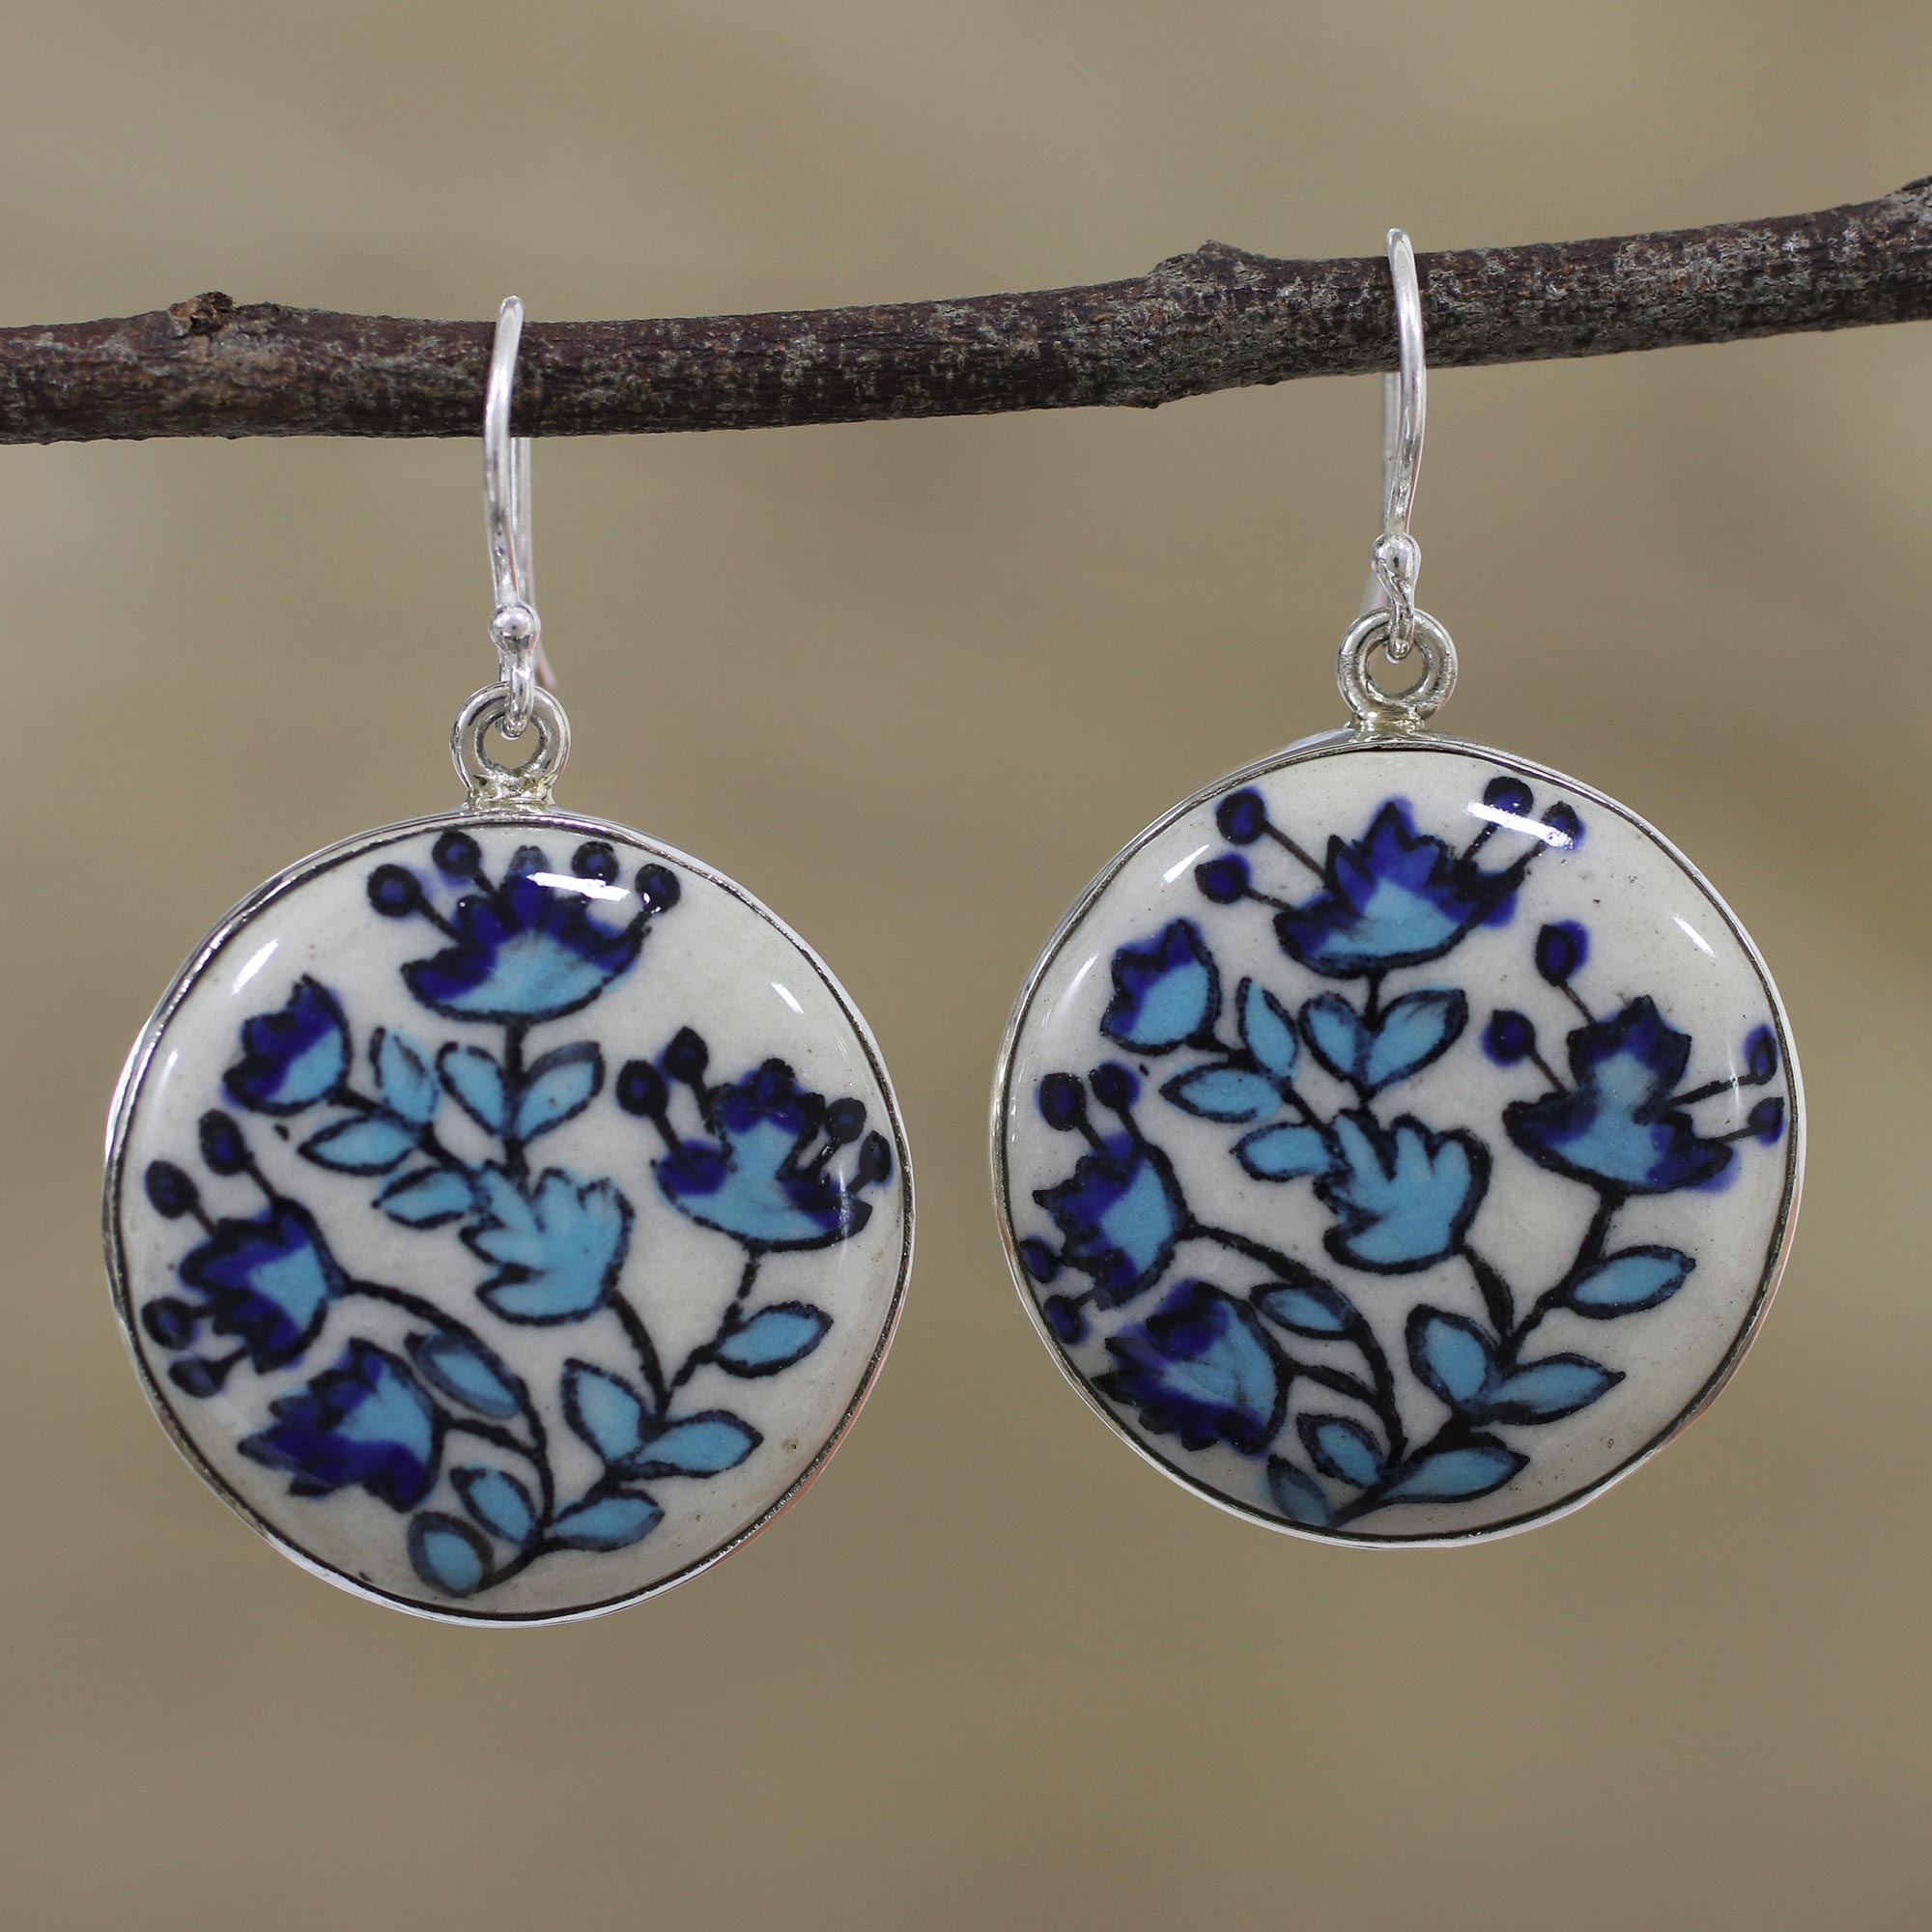 handmade jewellery Long floral earrings painted floral earrings white and blue earring polymer clay earring folk earrings